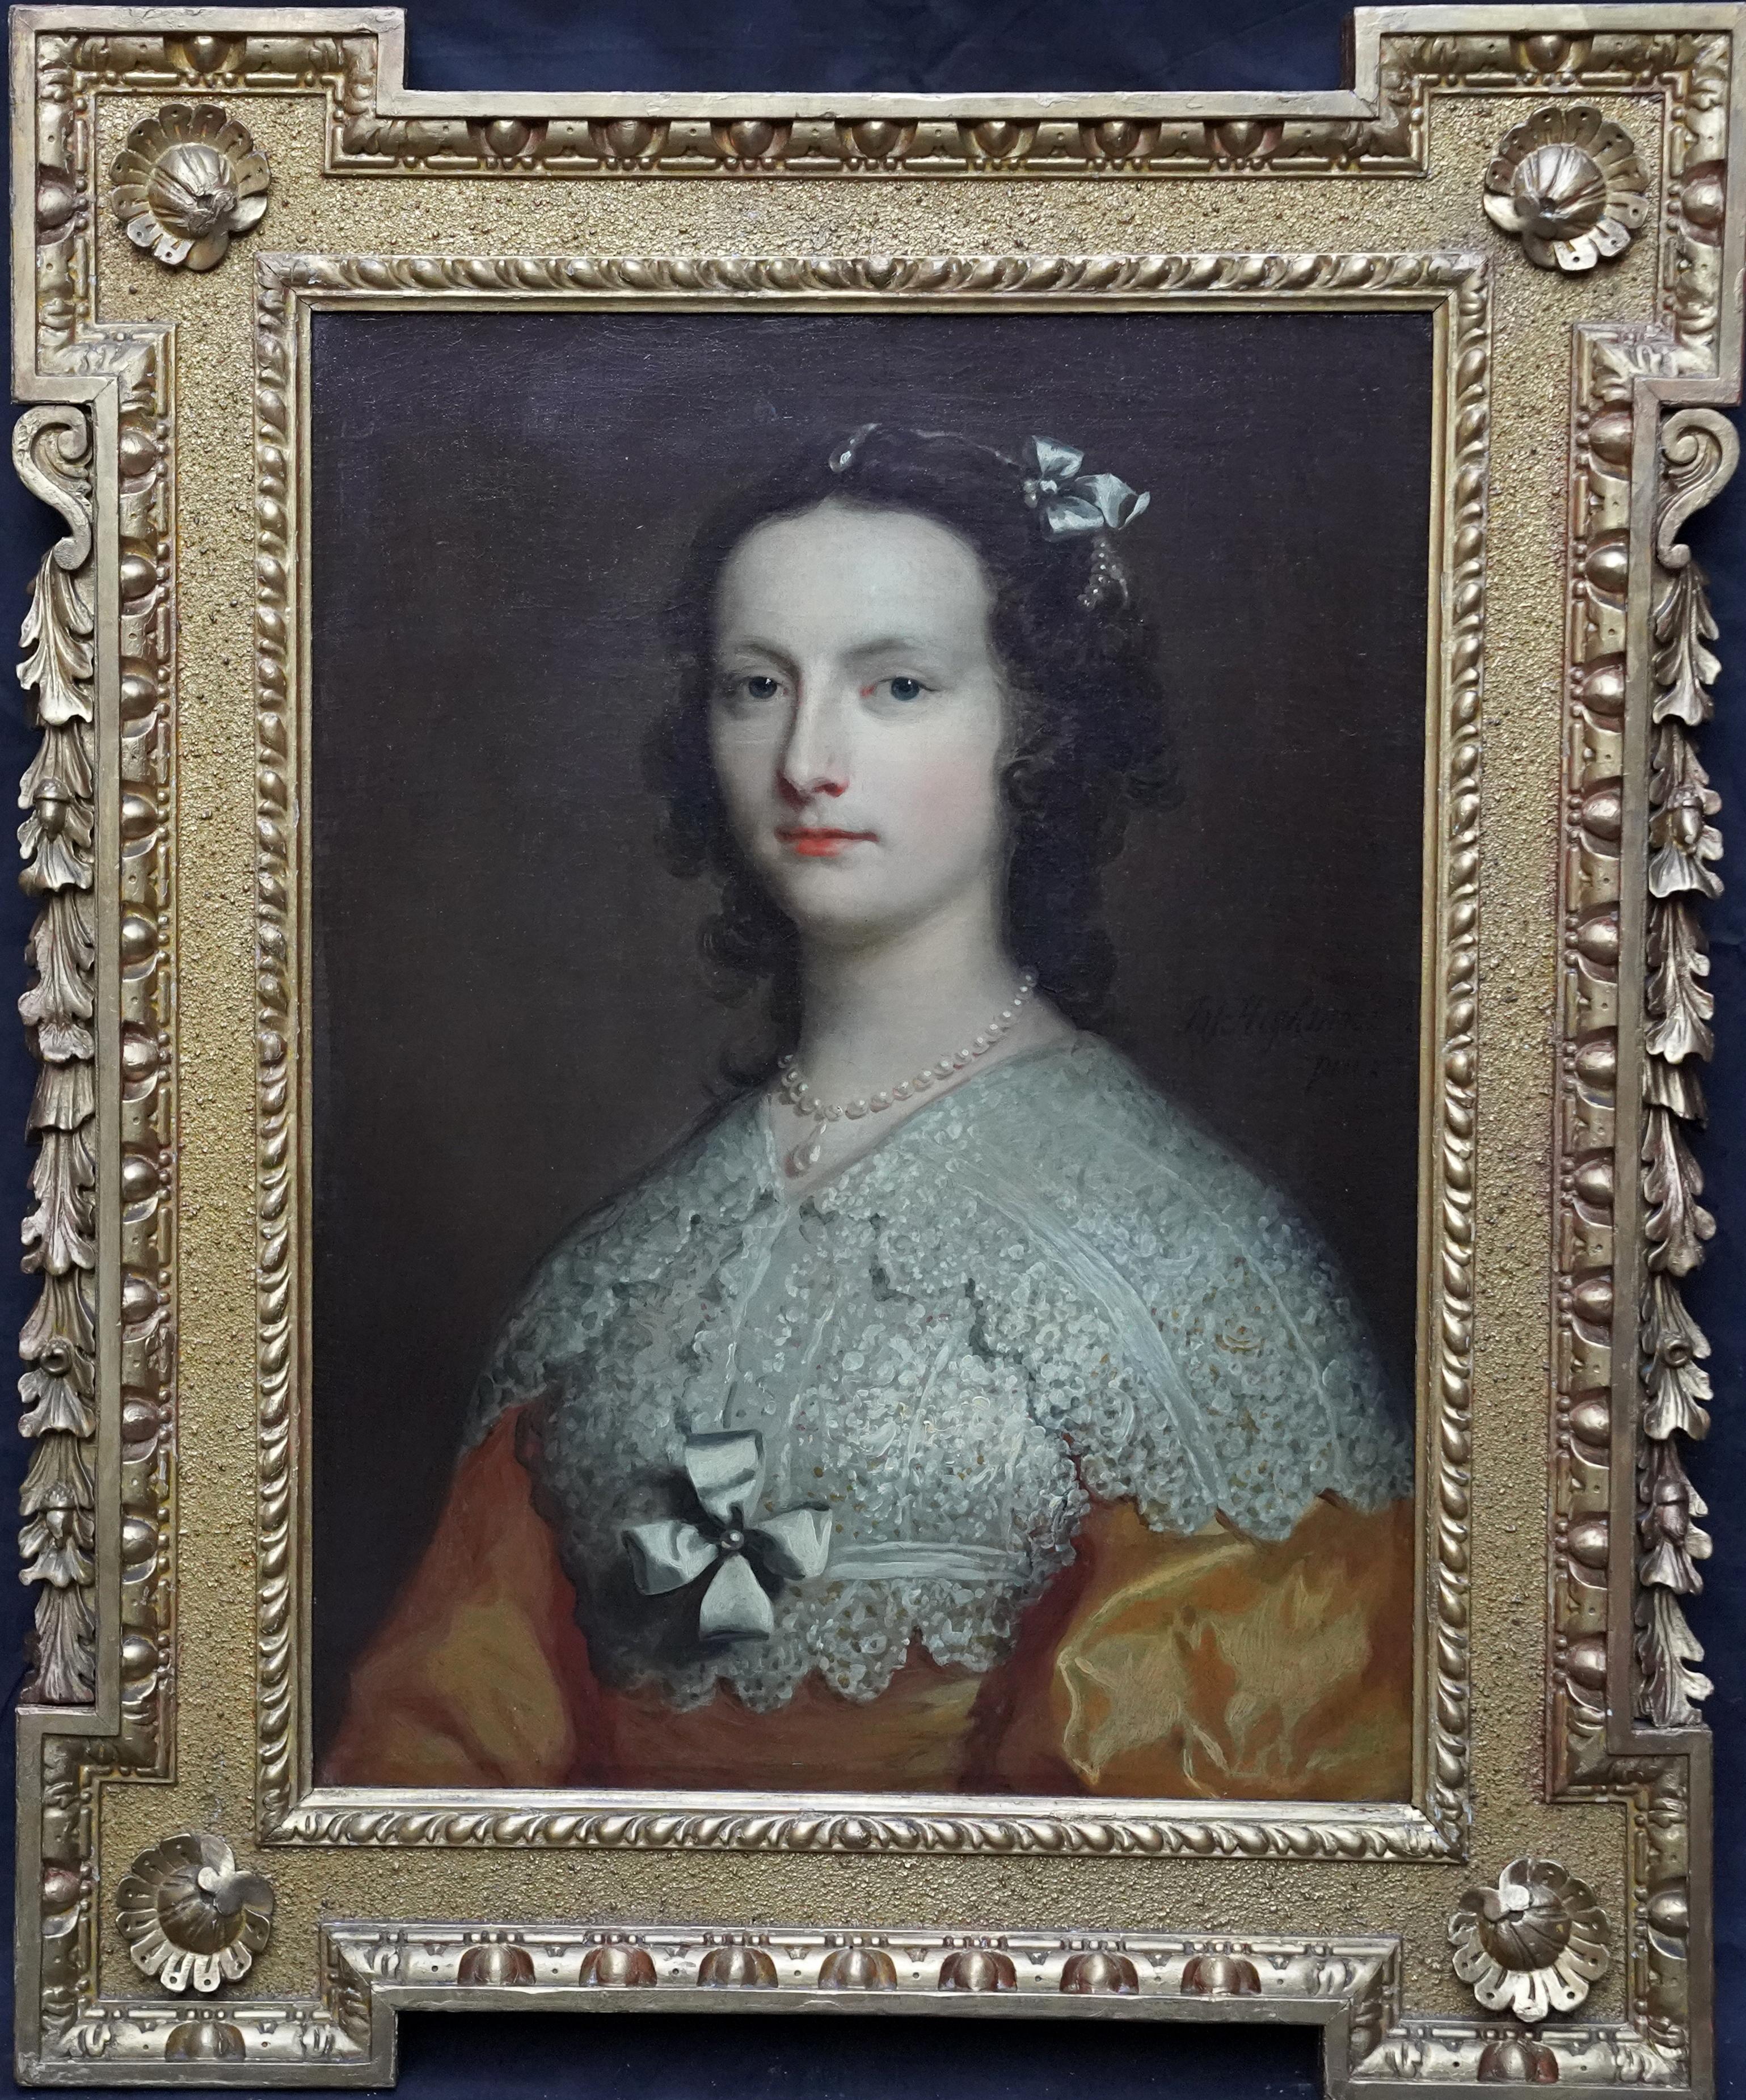 Joseph Highmore Portrait Painting – Porträt von Elizabeth Banks – britisches Ölgemälde eines Alten Meisters aus dem 18. Jahrhundert